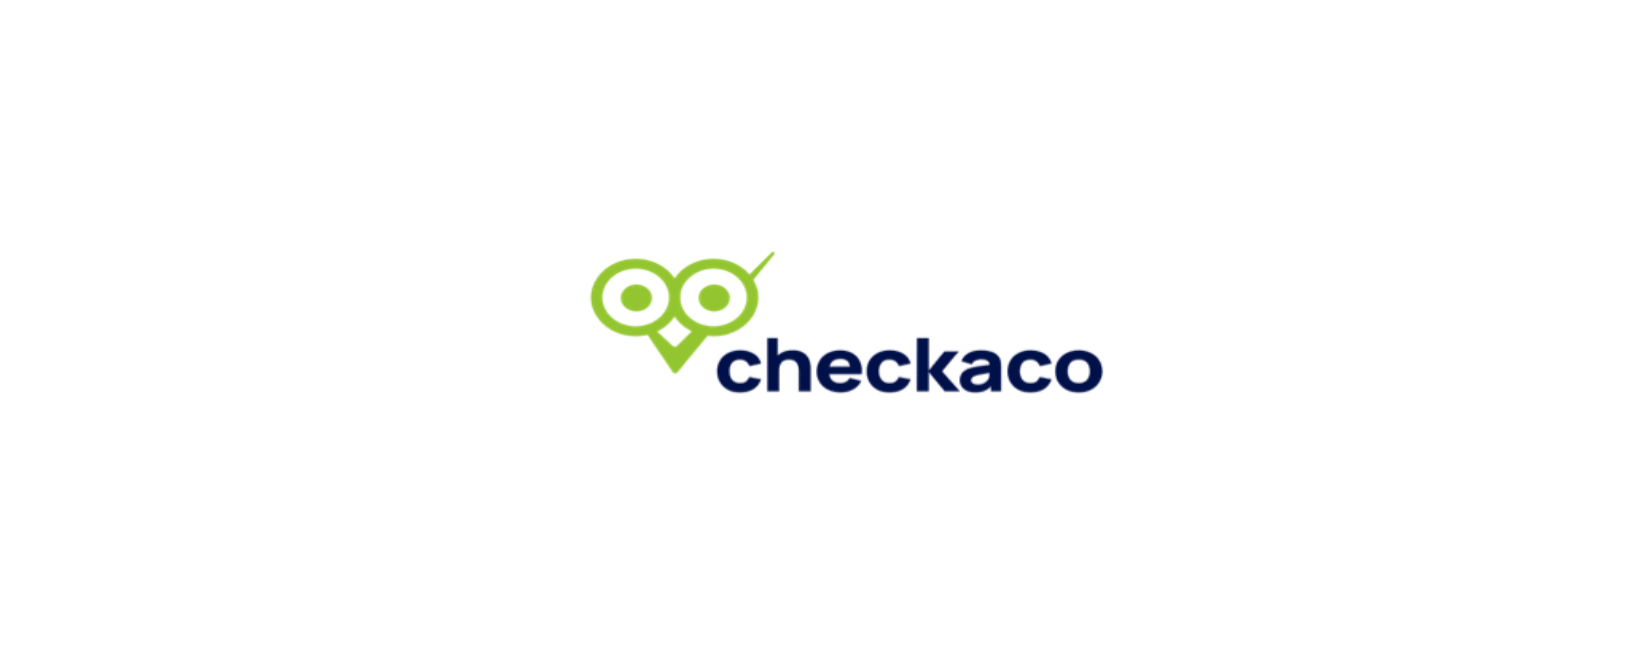 CHECKACO Discount Code 2022